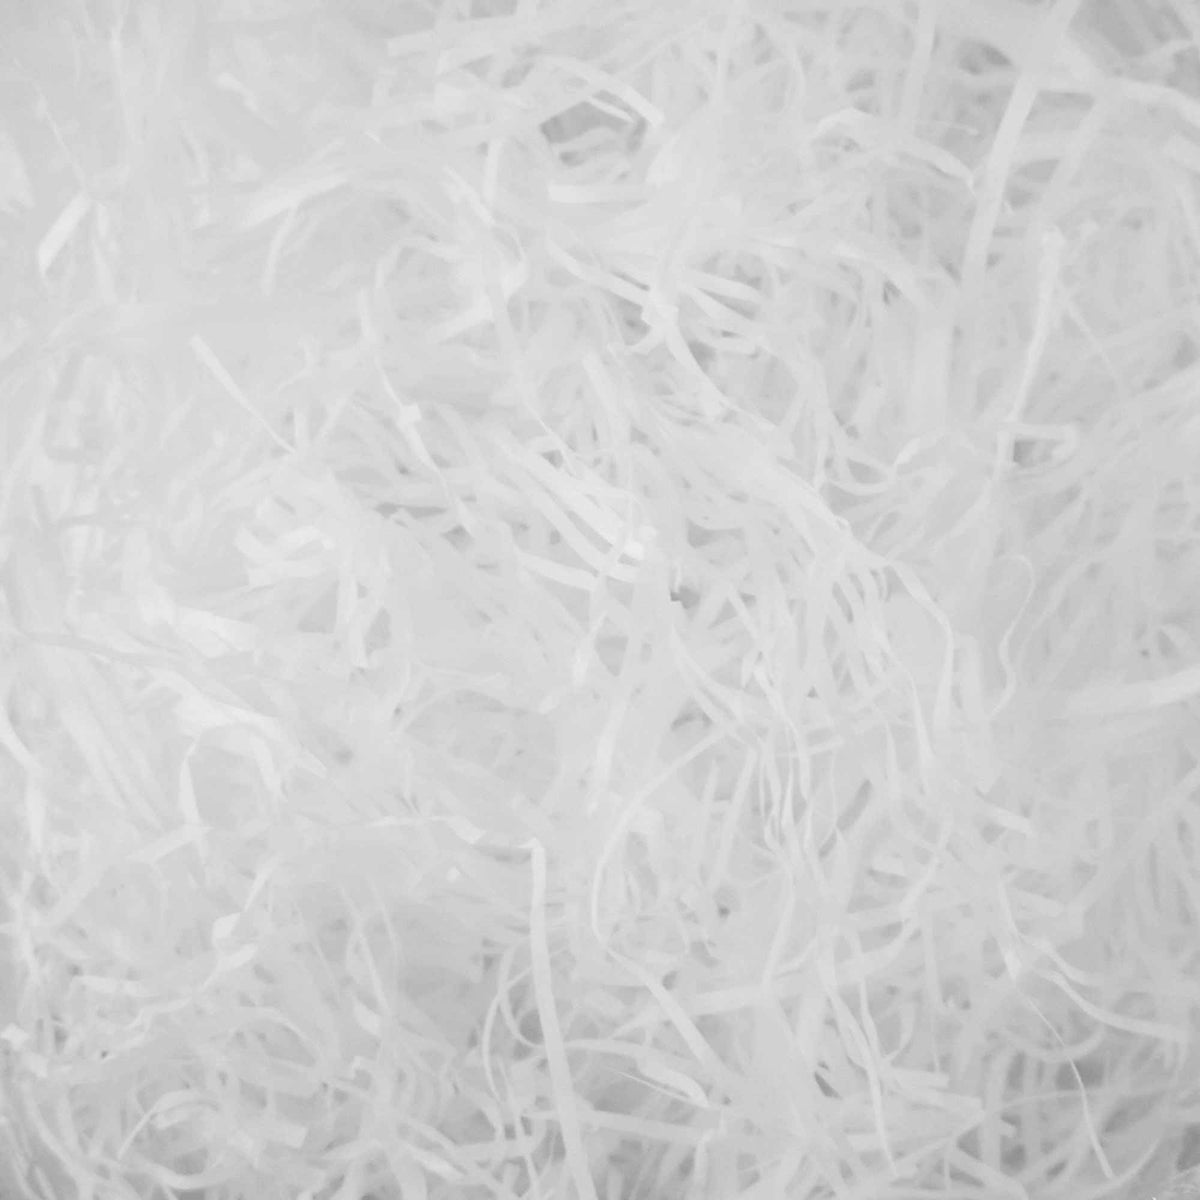 Shredded Tissue Paper for Packaging and Decor - White